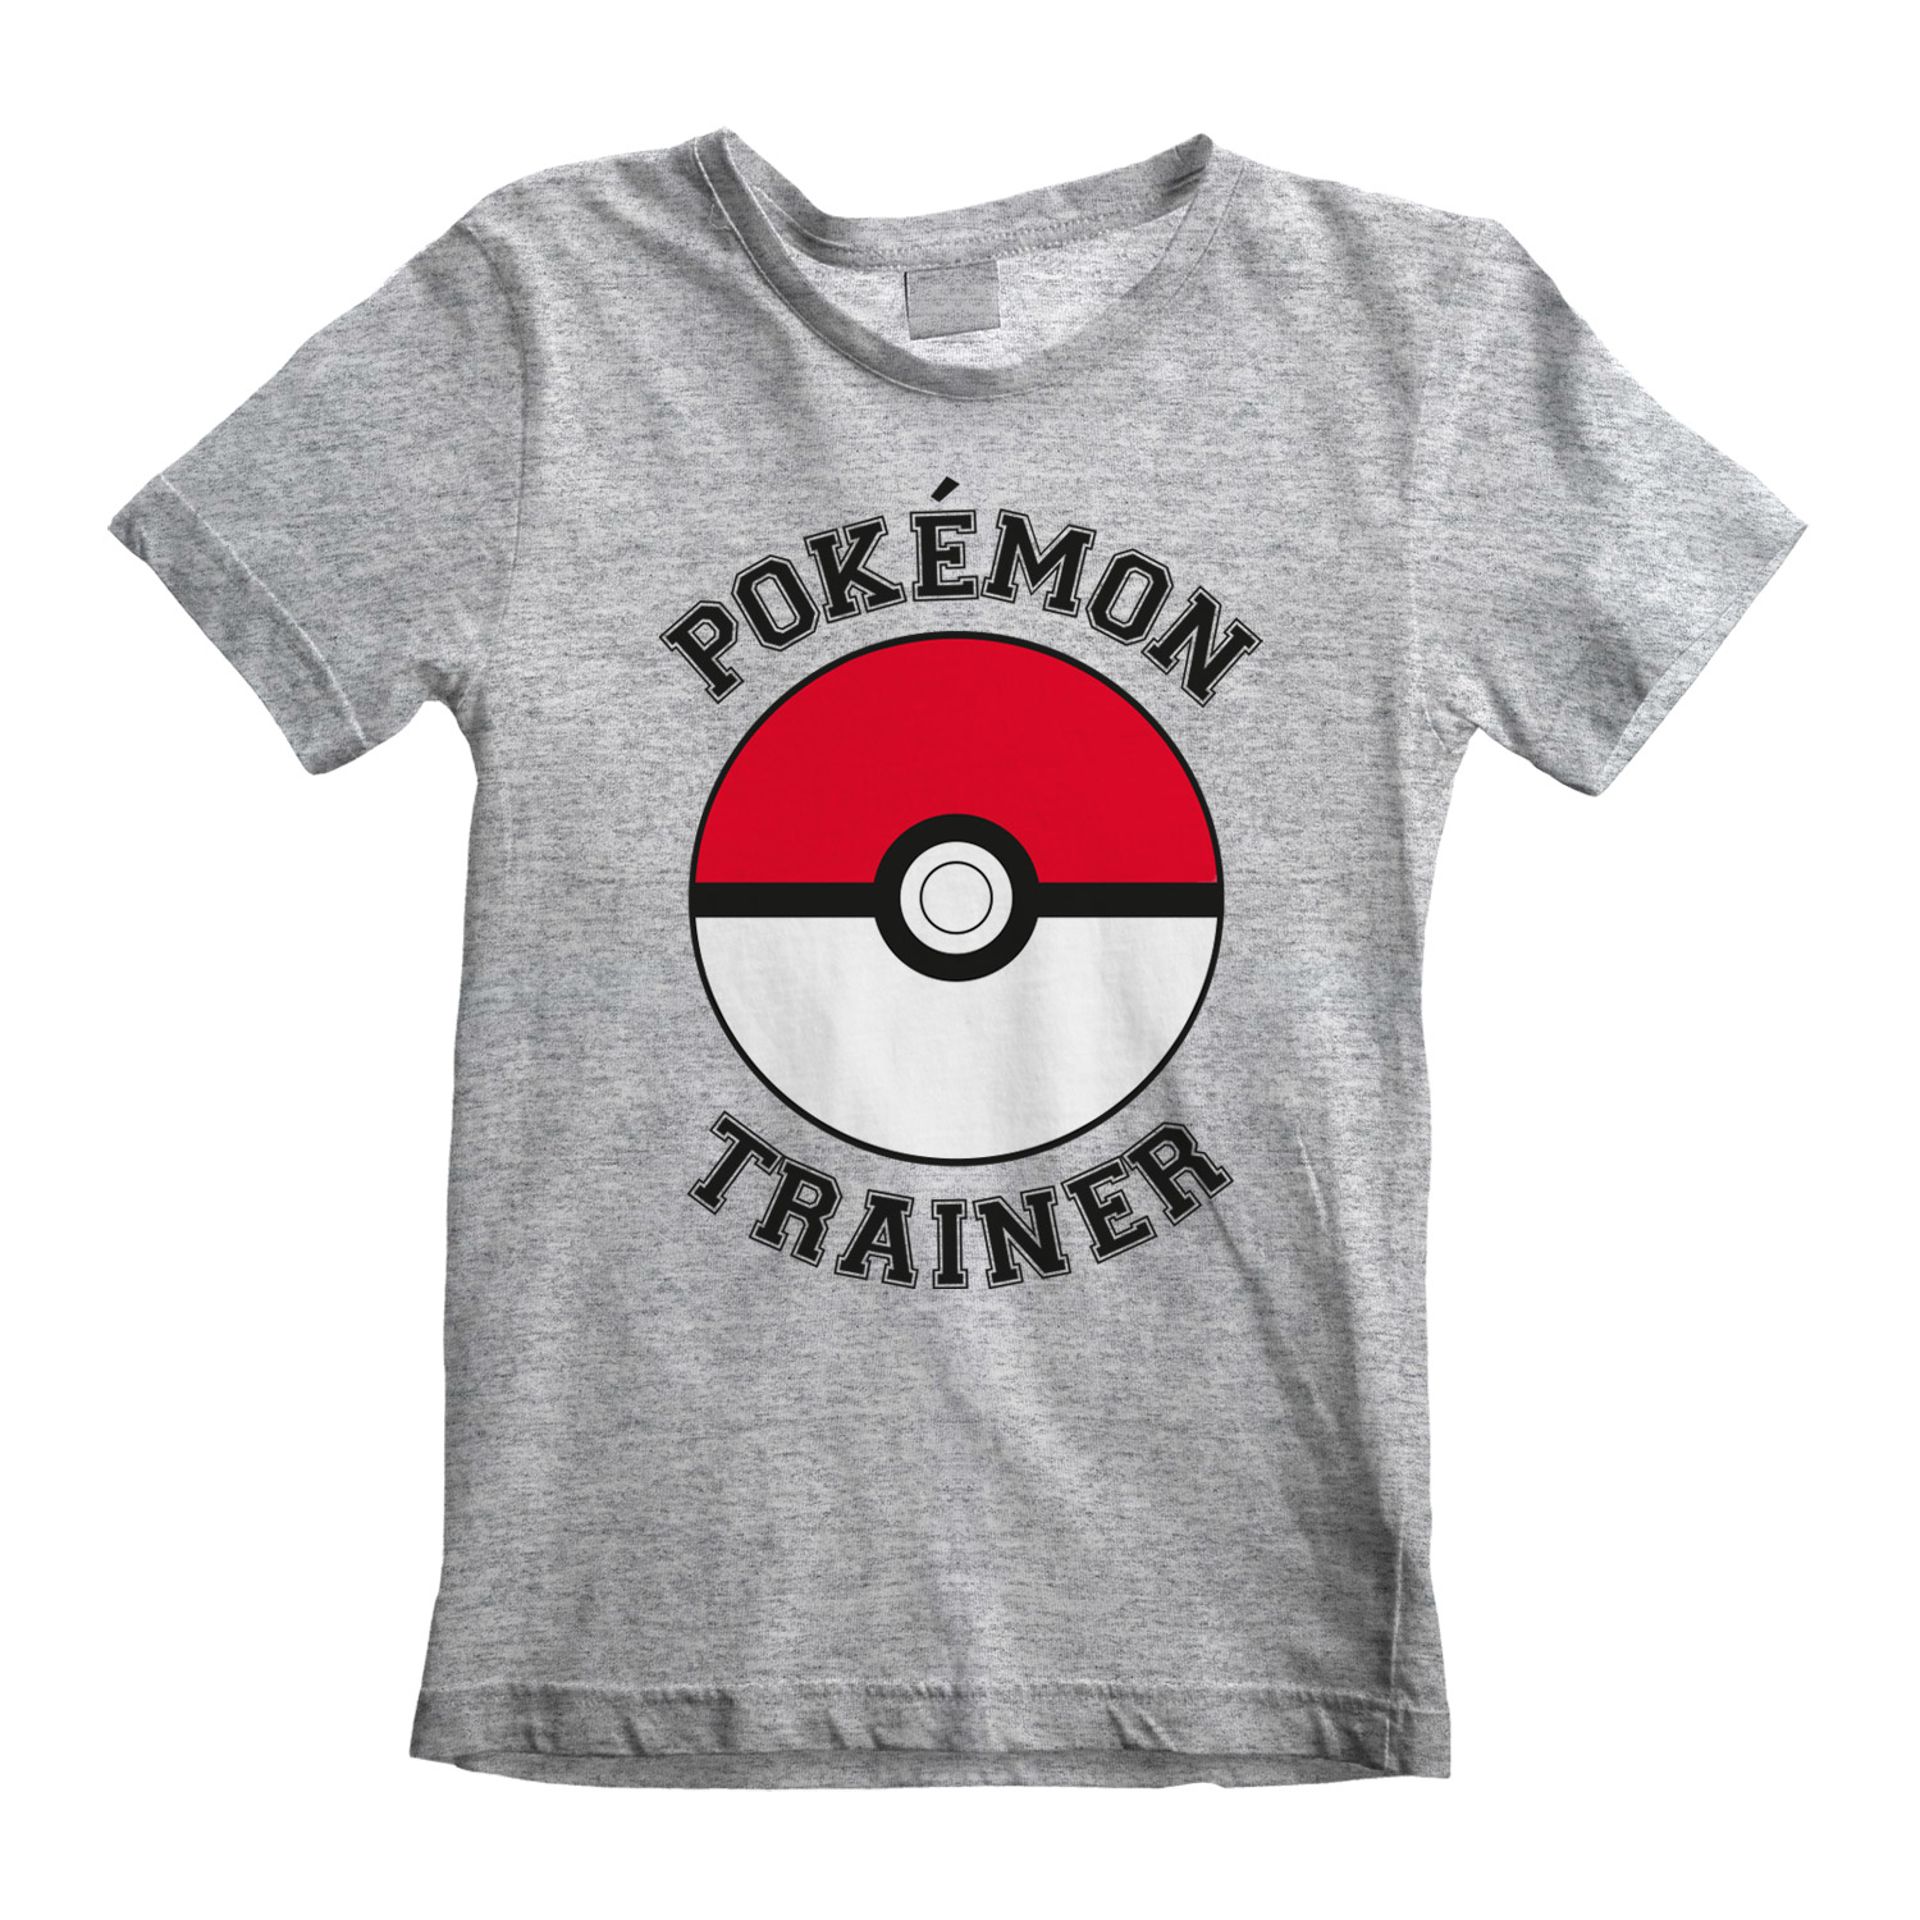 Nintendo - T-shirt Enfant Gris chiné Pokémon Entraîneur - 9-11 a